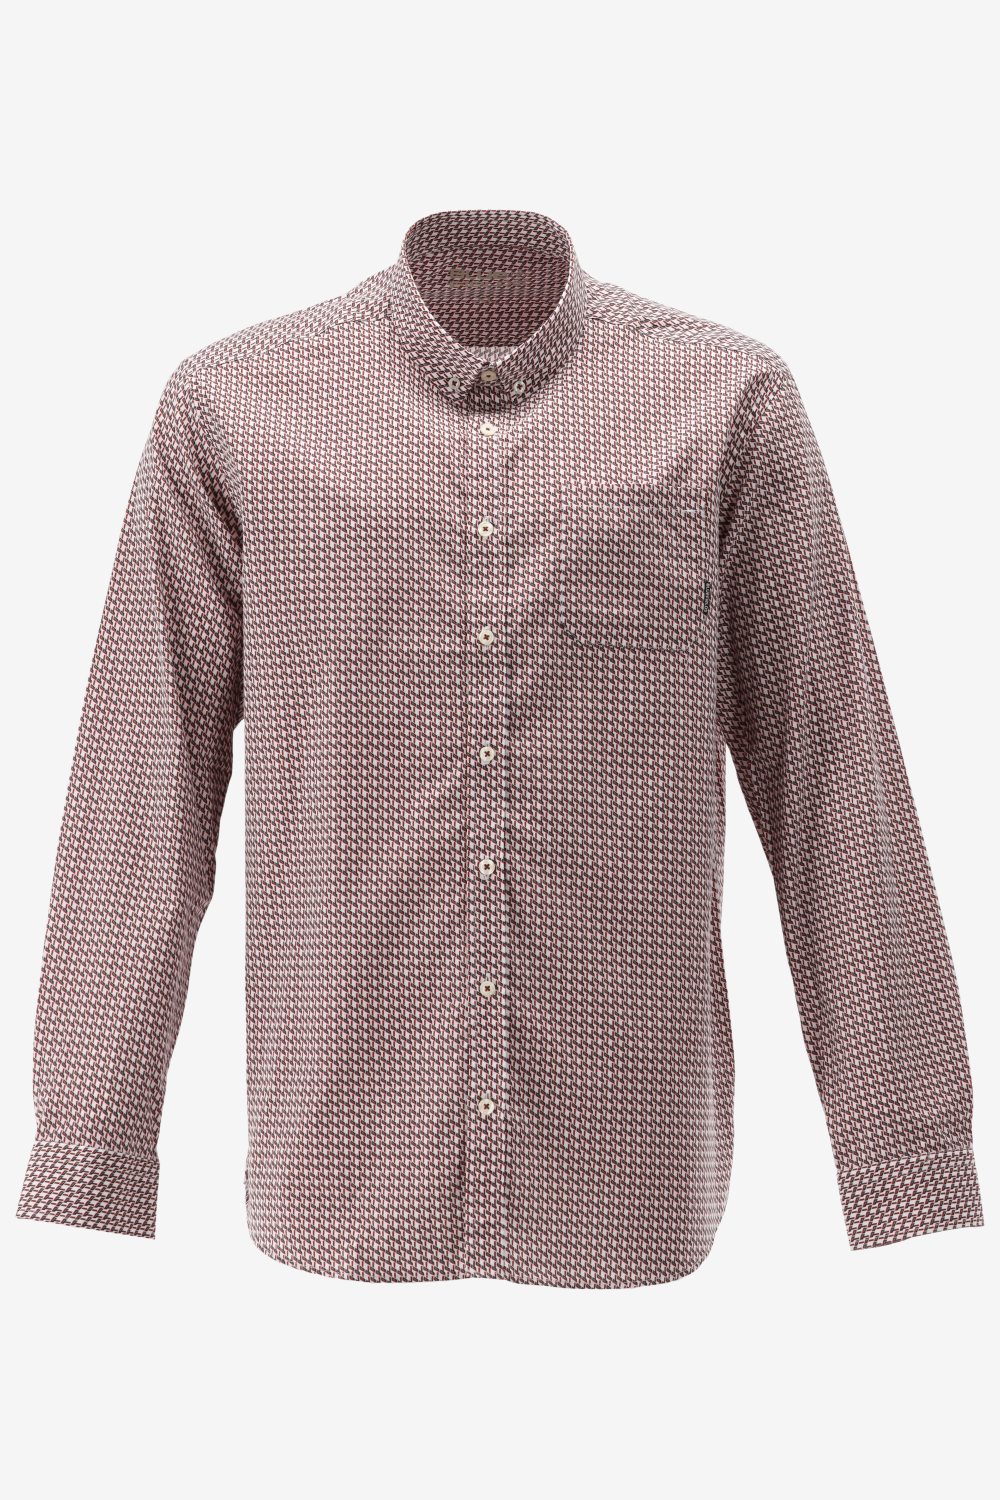 BlueFields Overhemd Shirt Ls Printed Pop 21442003 1147 Mannen Maat - XL